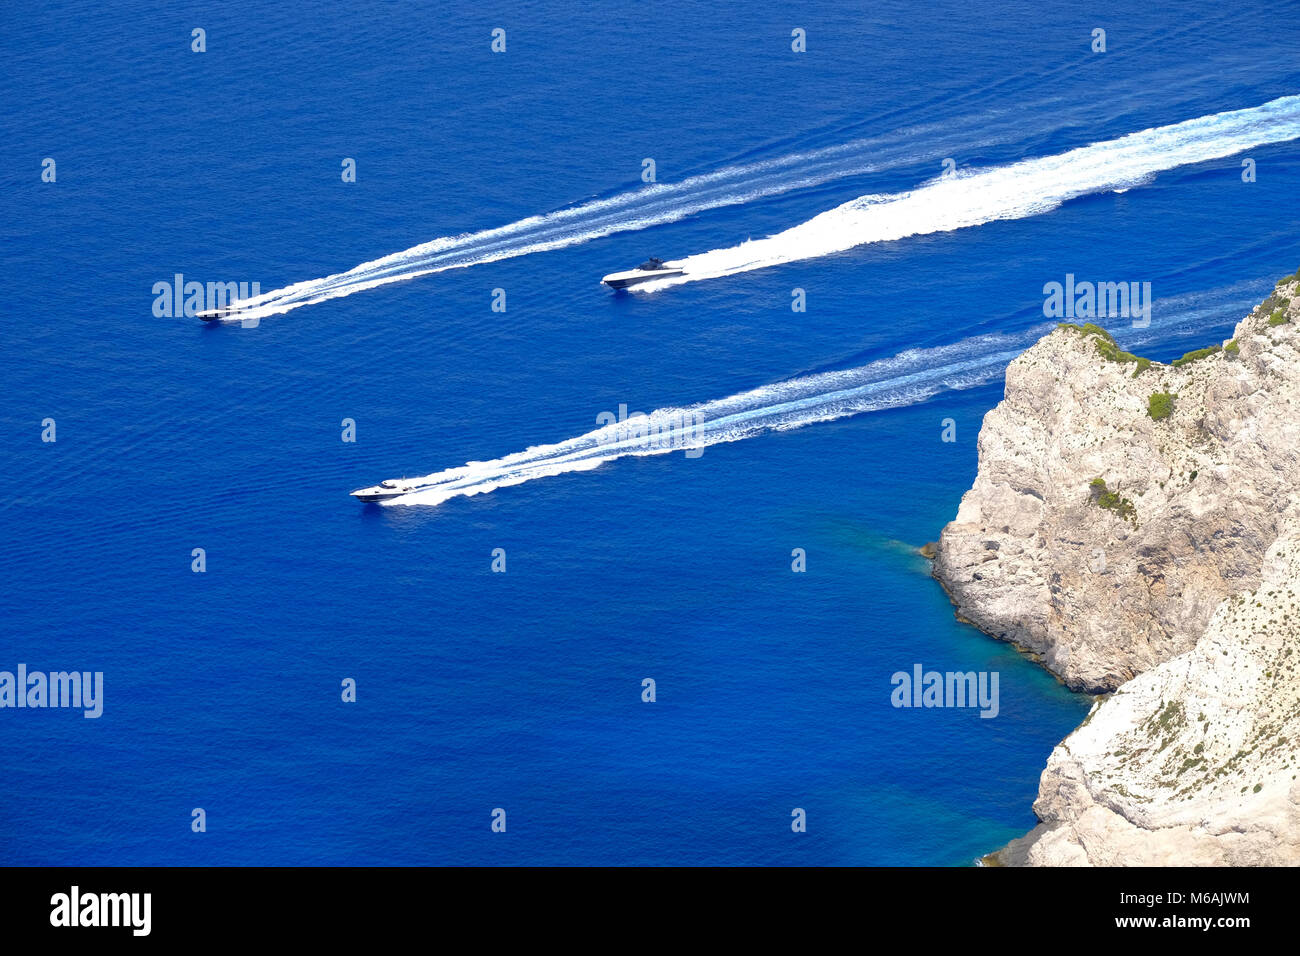 Los barcos corriendo a alta velocidad en aguas claras cerca del acantilado de la isla de Zakynthos, Grecia Foto de stock